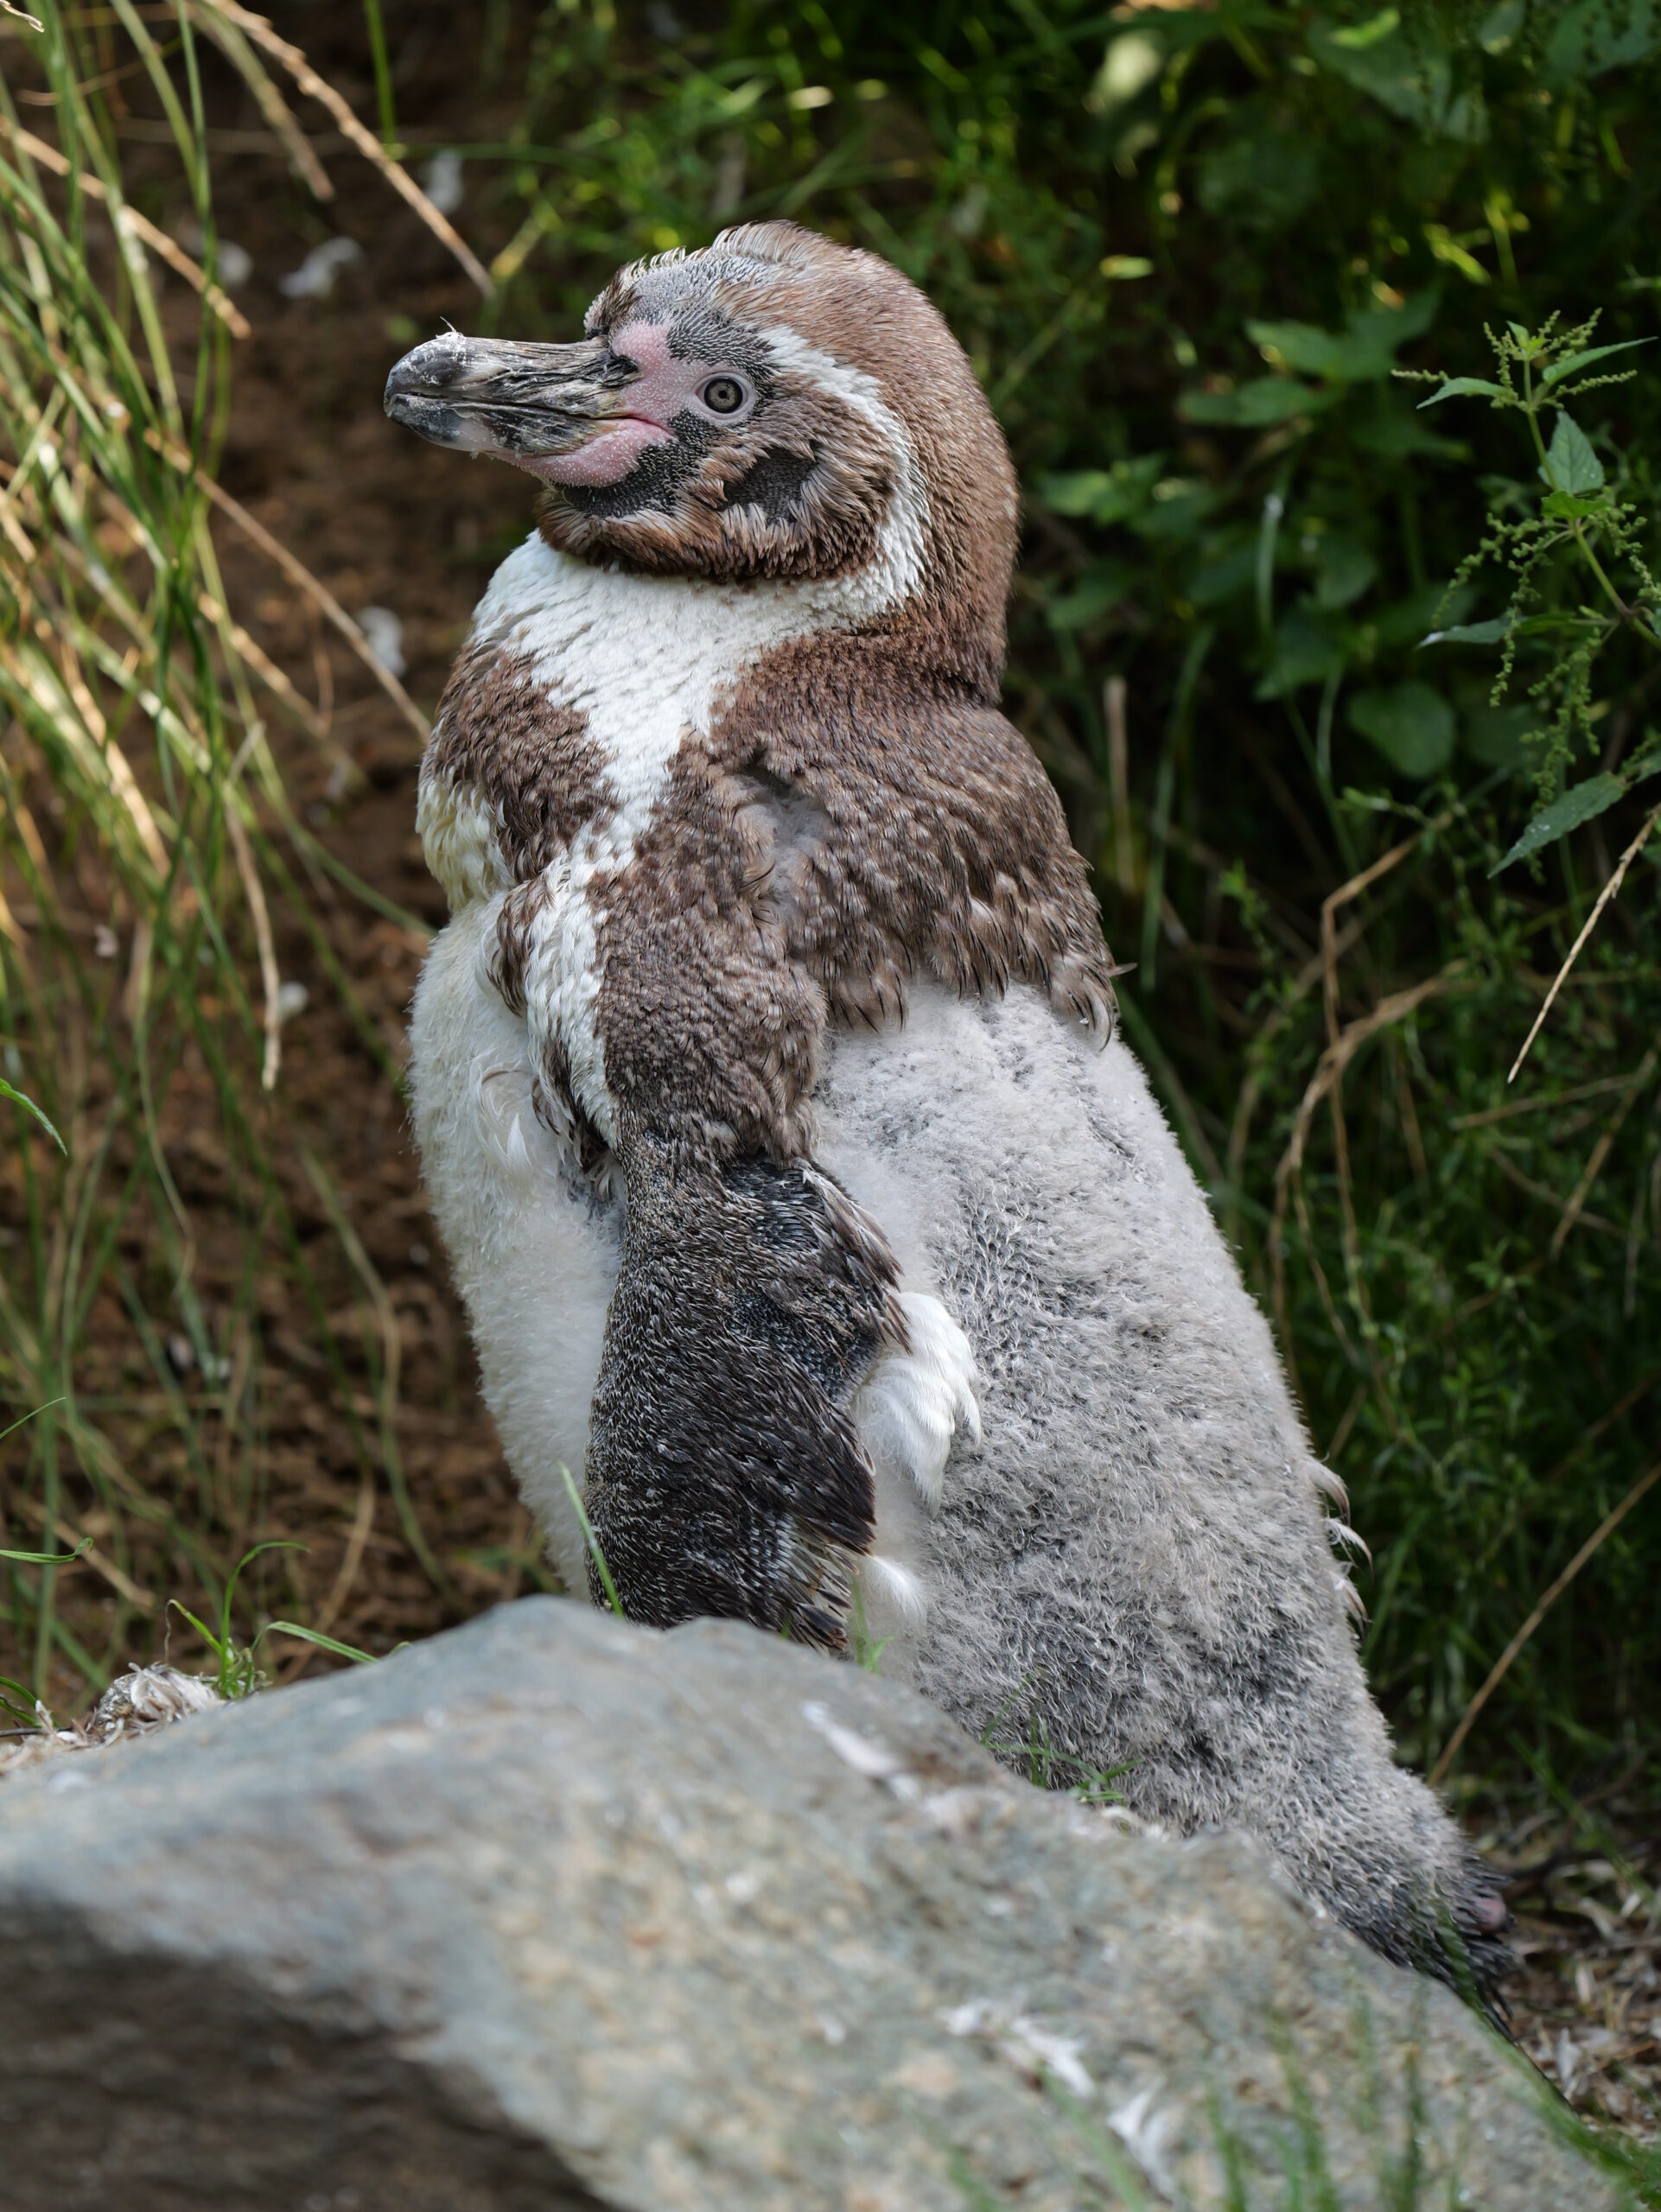 Pinguin, aufgenommen mit Lumix G9II.